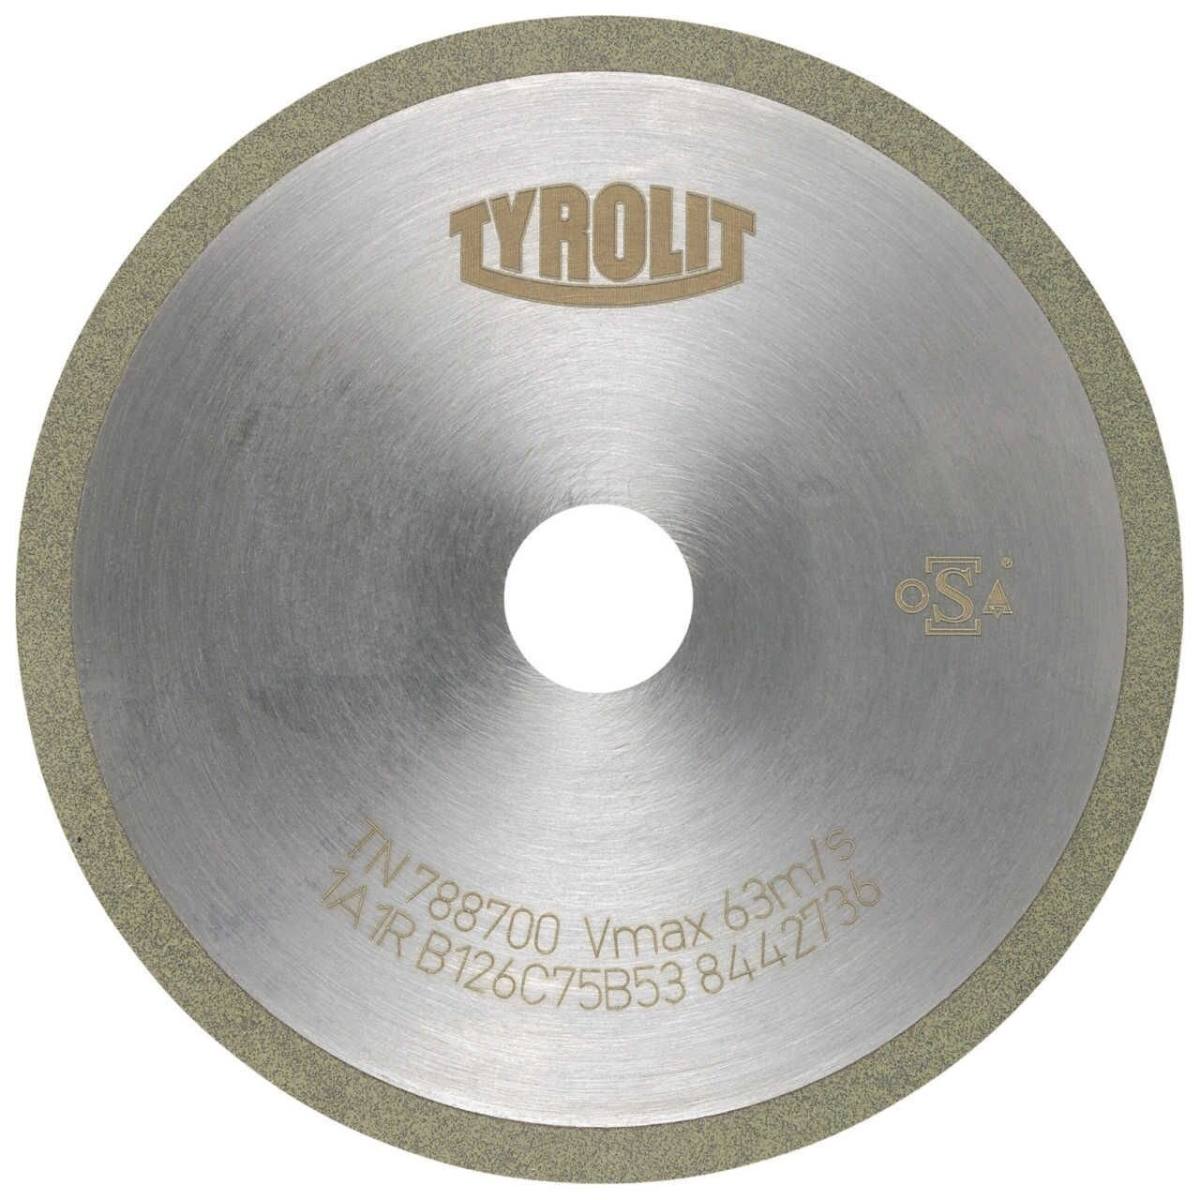 TYROLIT Utensili rotativi da taglio DxDxH 75x1x20 Per metallo duro, forma: 1A1R (disco da taglio con rotella continua), Art. 299109